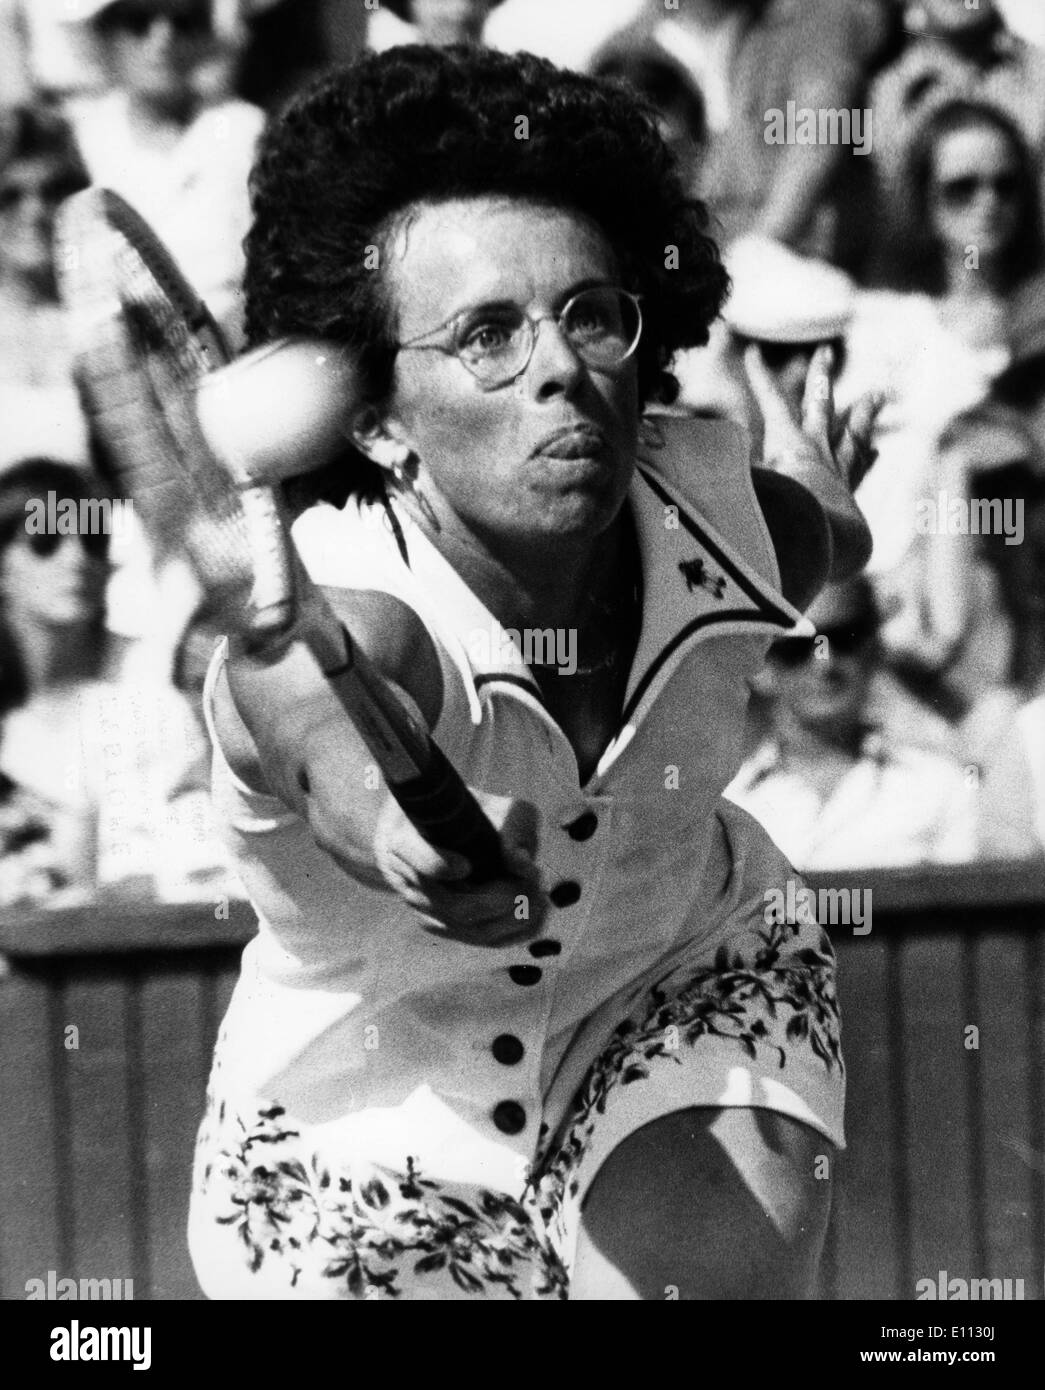 Tennis player Billie Jean King at Wimbledon Stock Photo